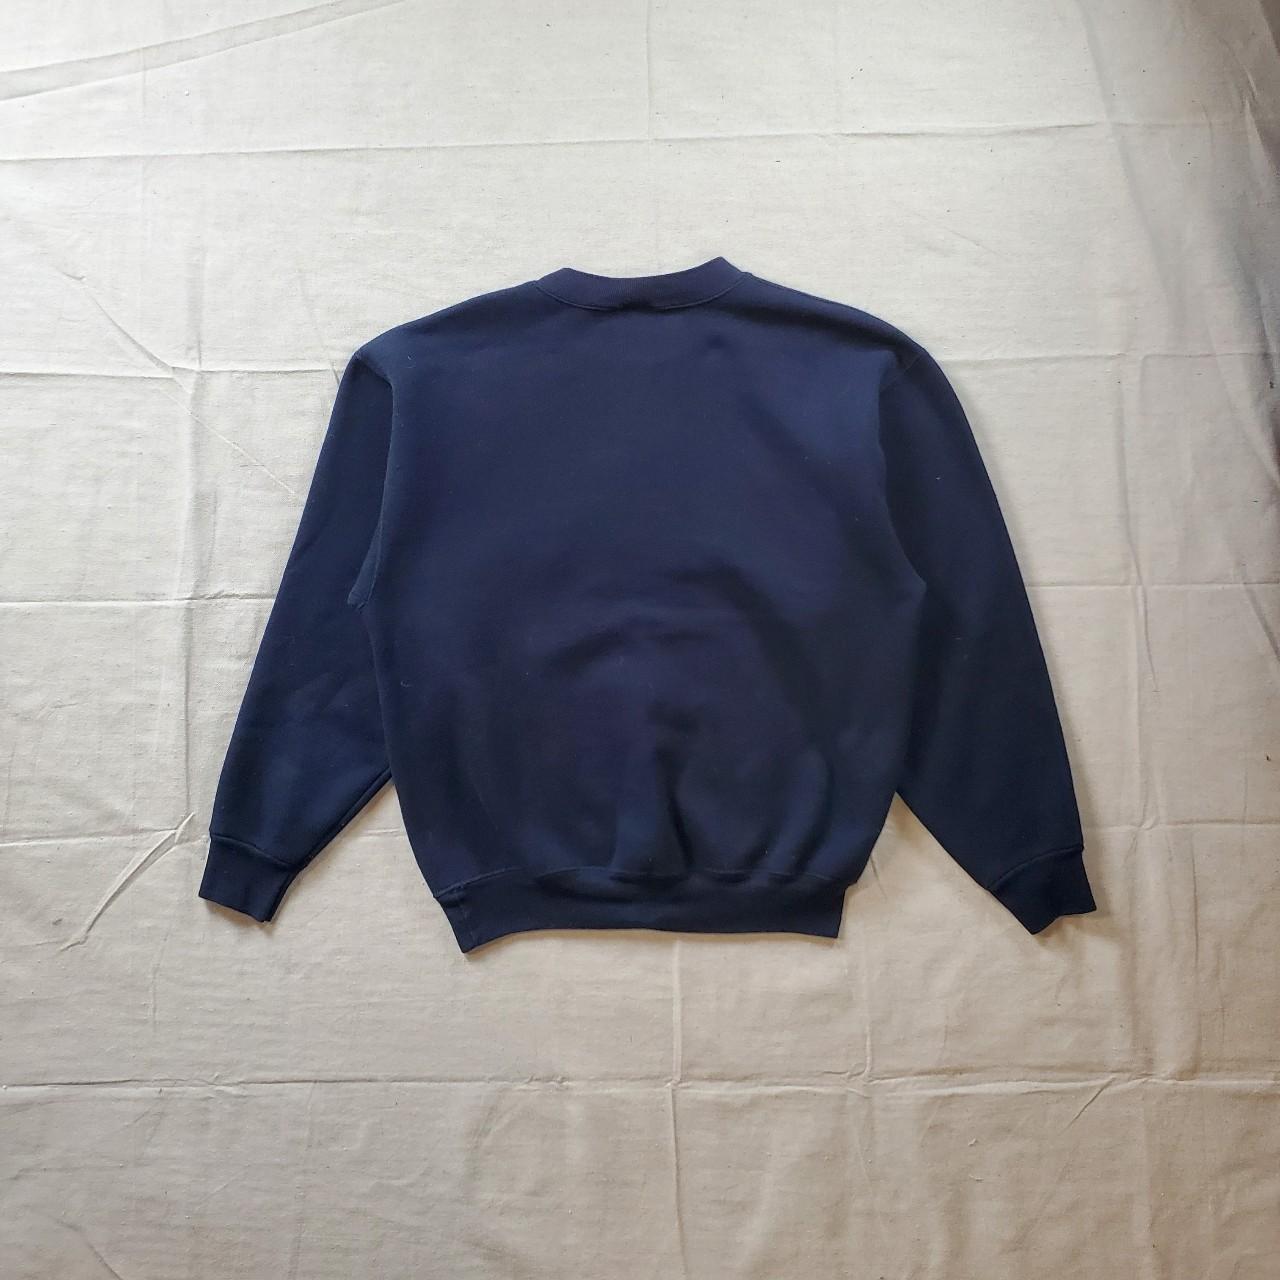 Vintage Oceanside crewneck sweatshirt 90s navy... - Depop